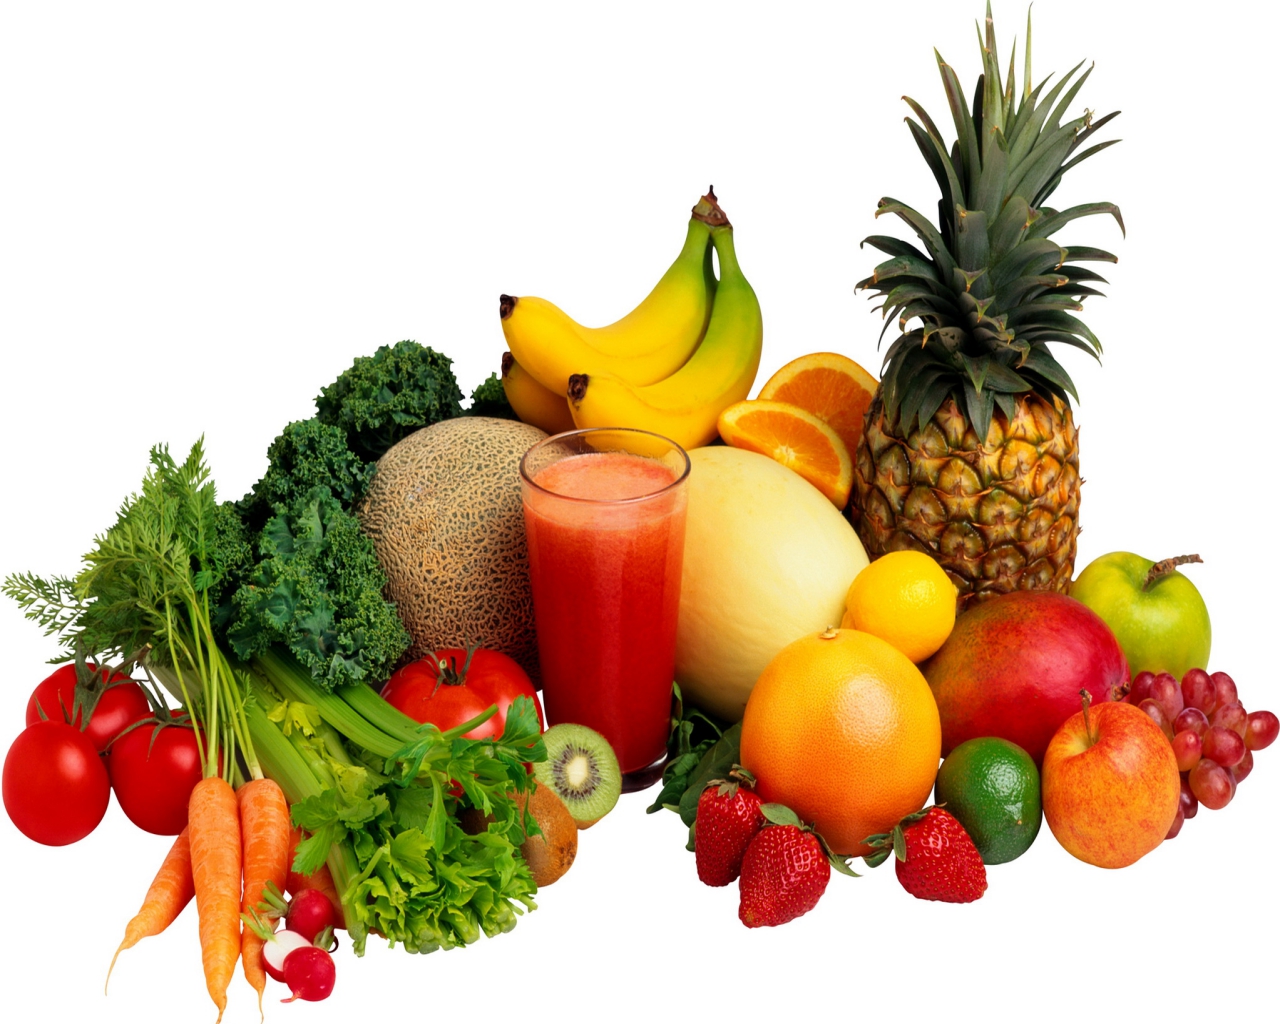 Fruits & Vegetables #14